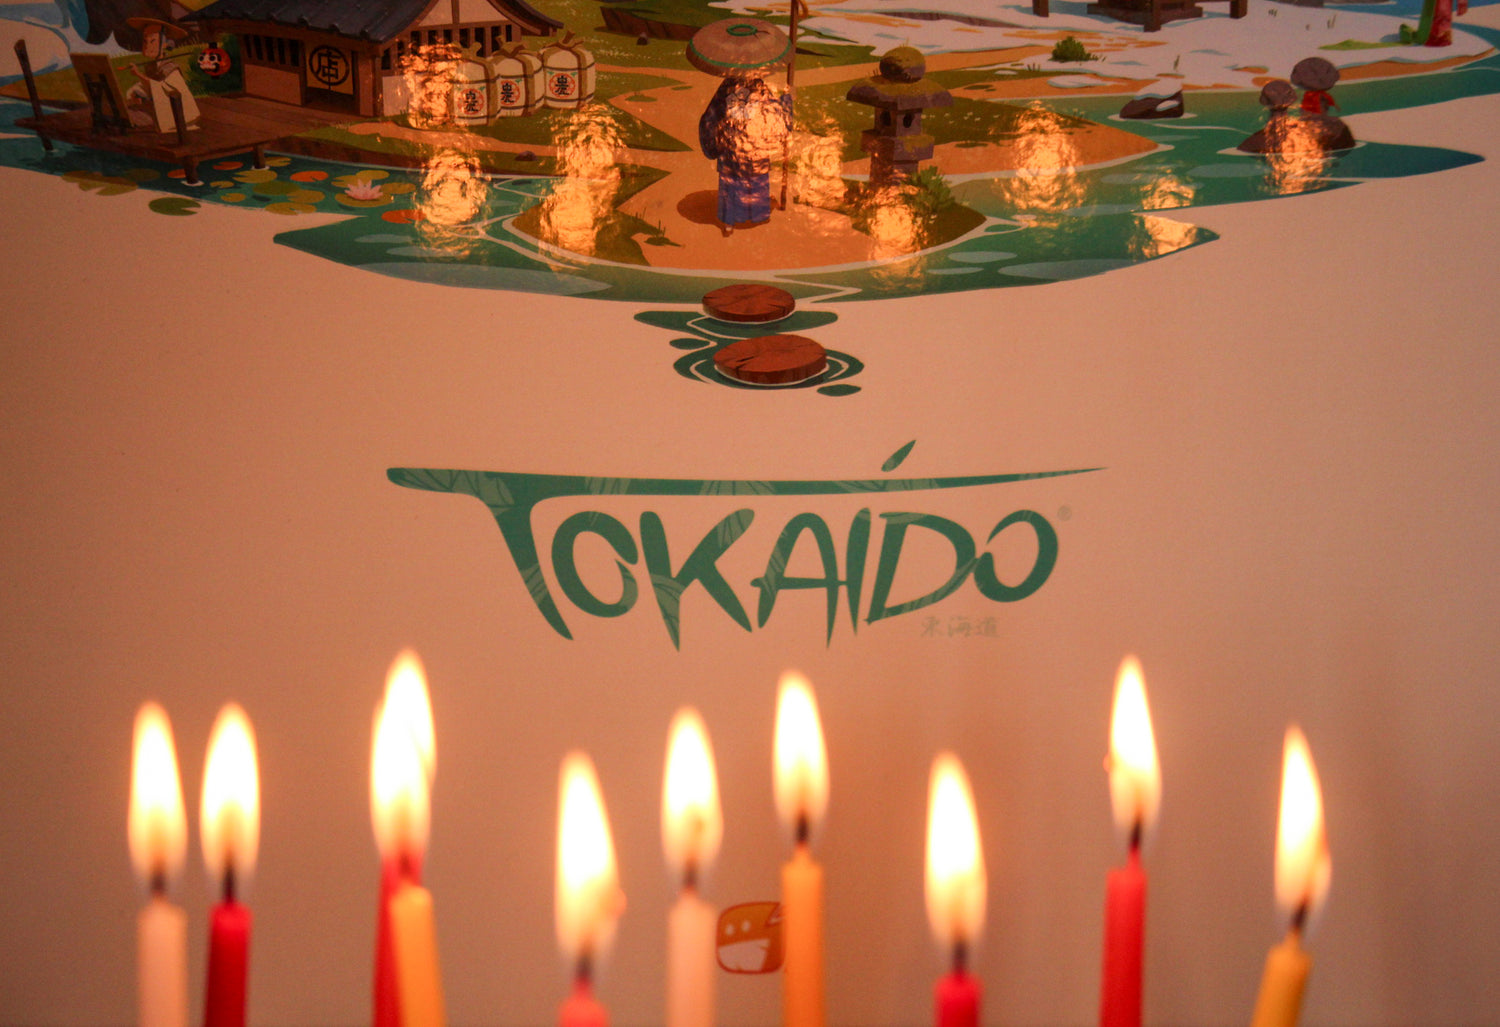 10 ans déjà ! Tokaido fête son dixième anniversaire avec une nouvelle édition !